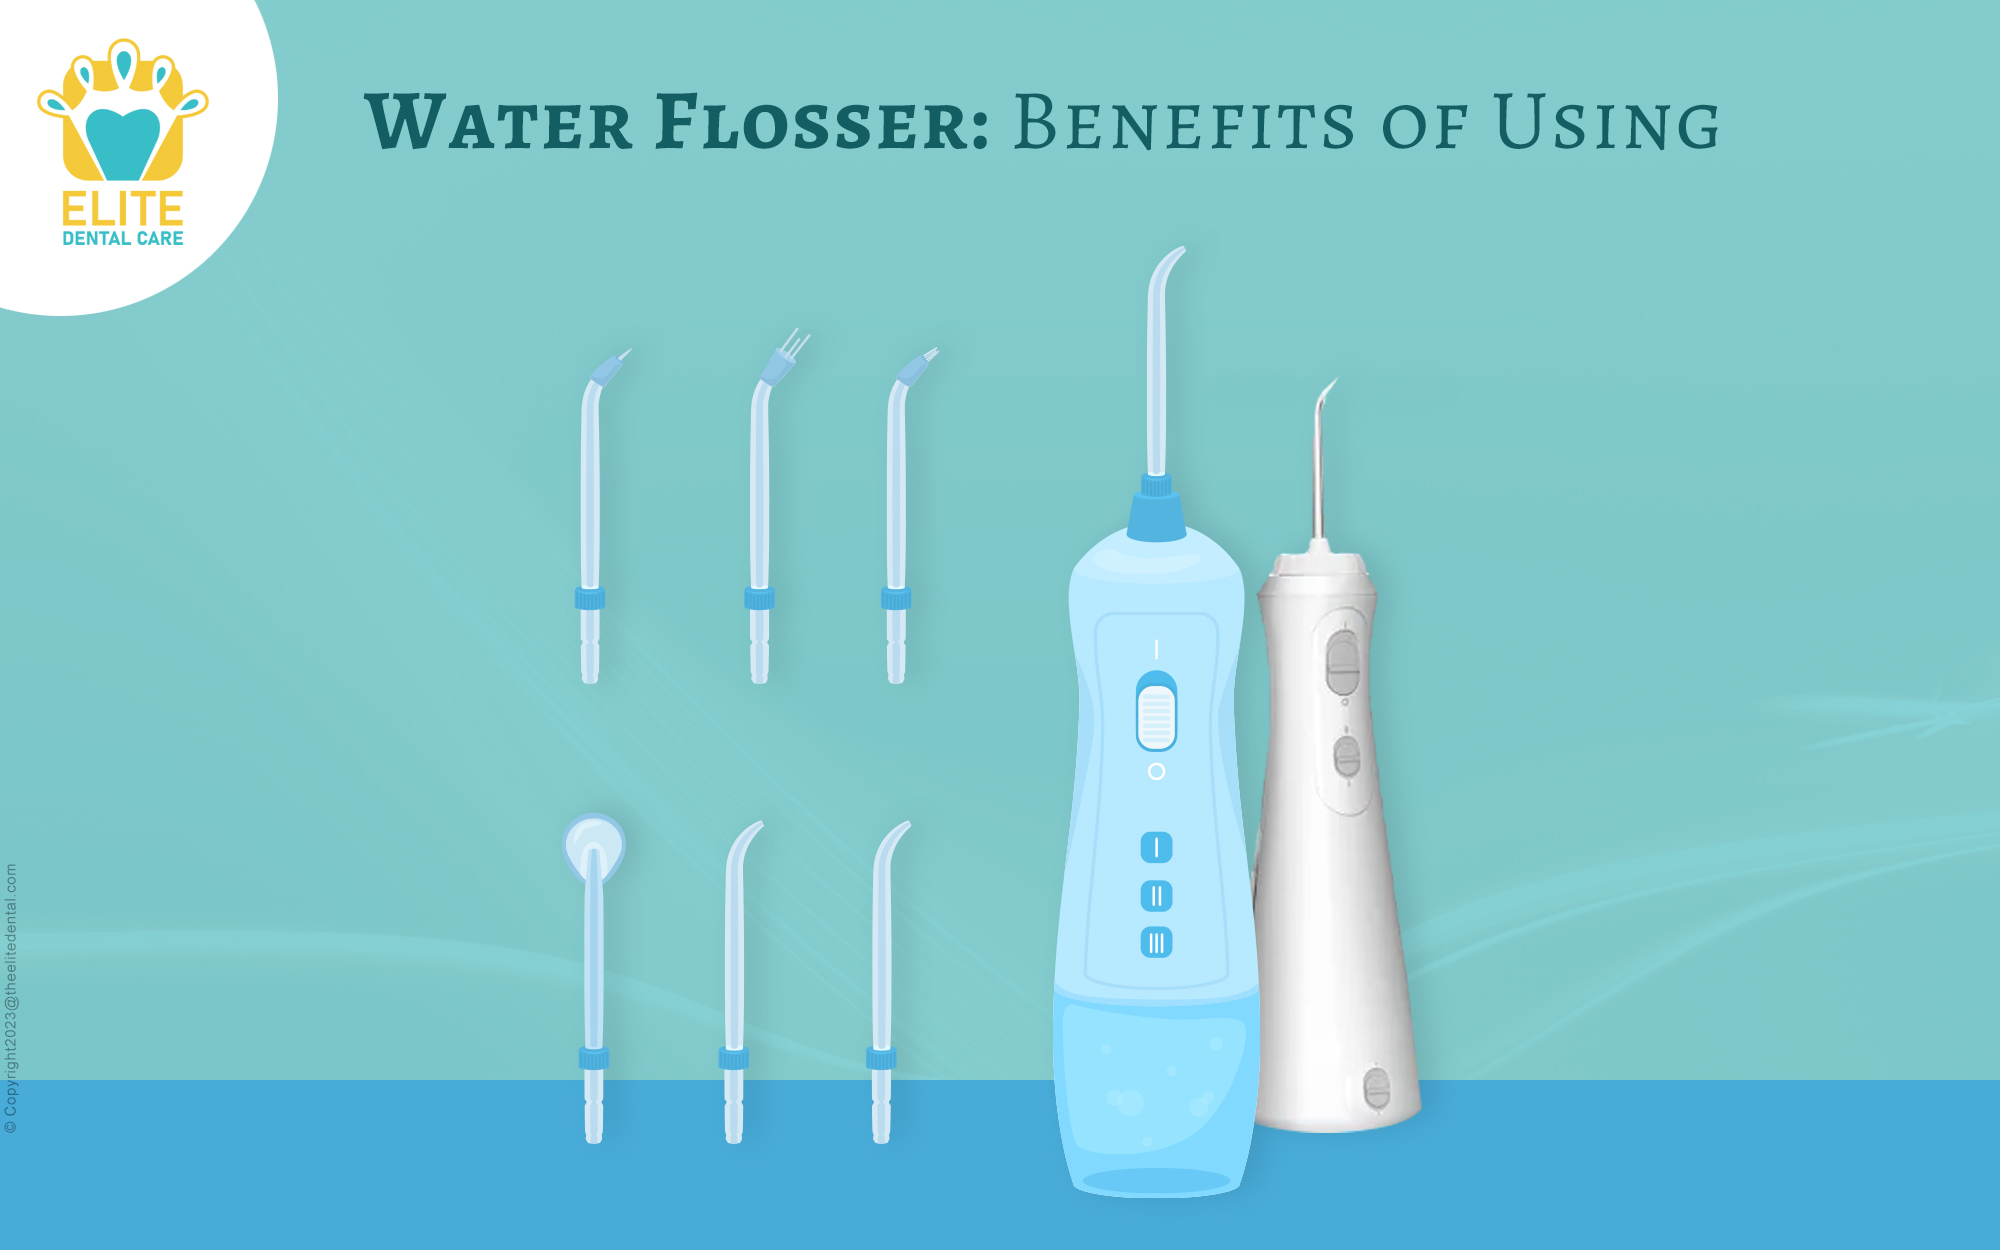 Water flosser benefits